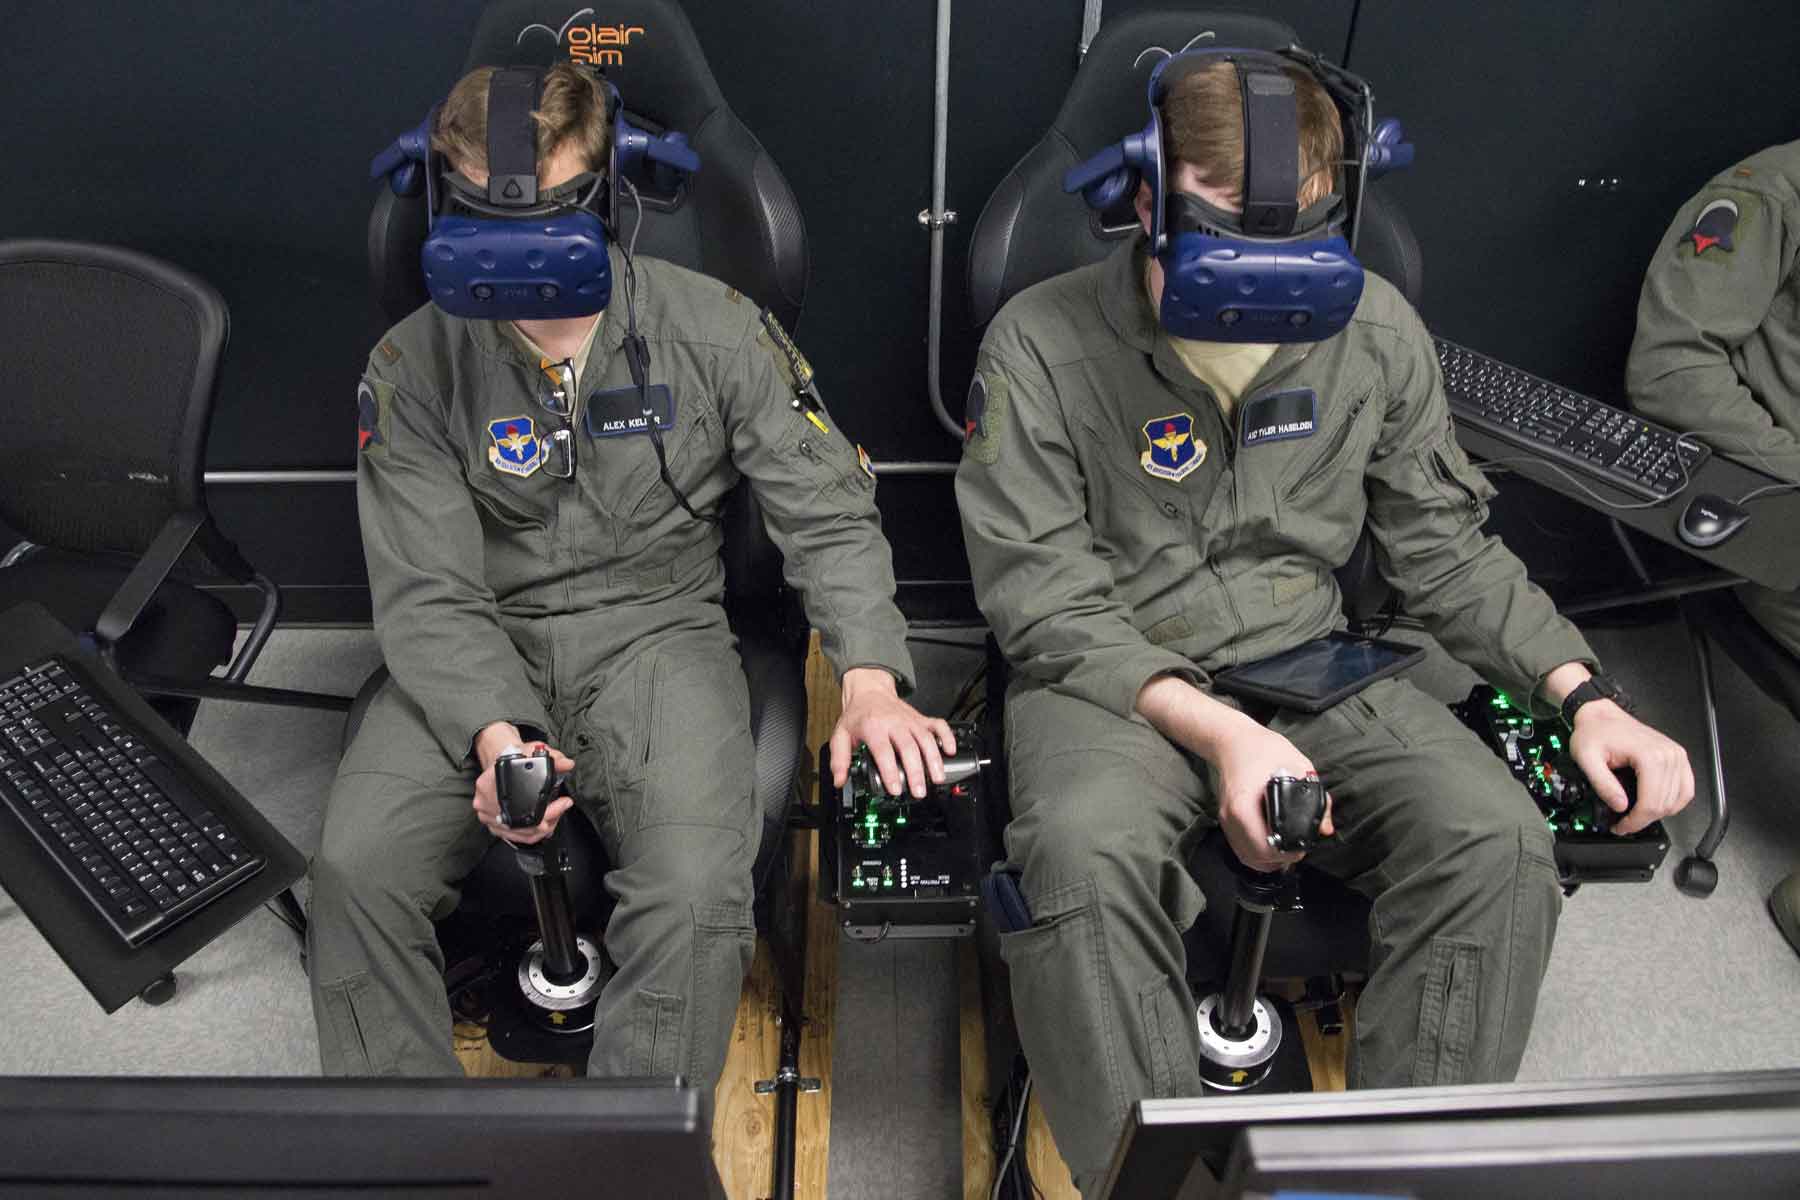 Full Flight Simulator, Pilot Training System